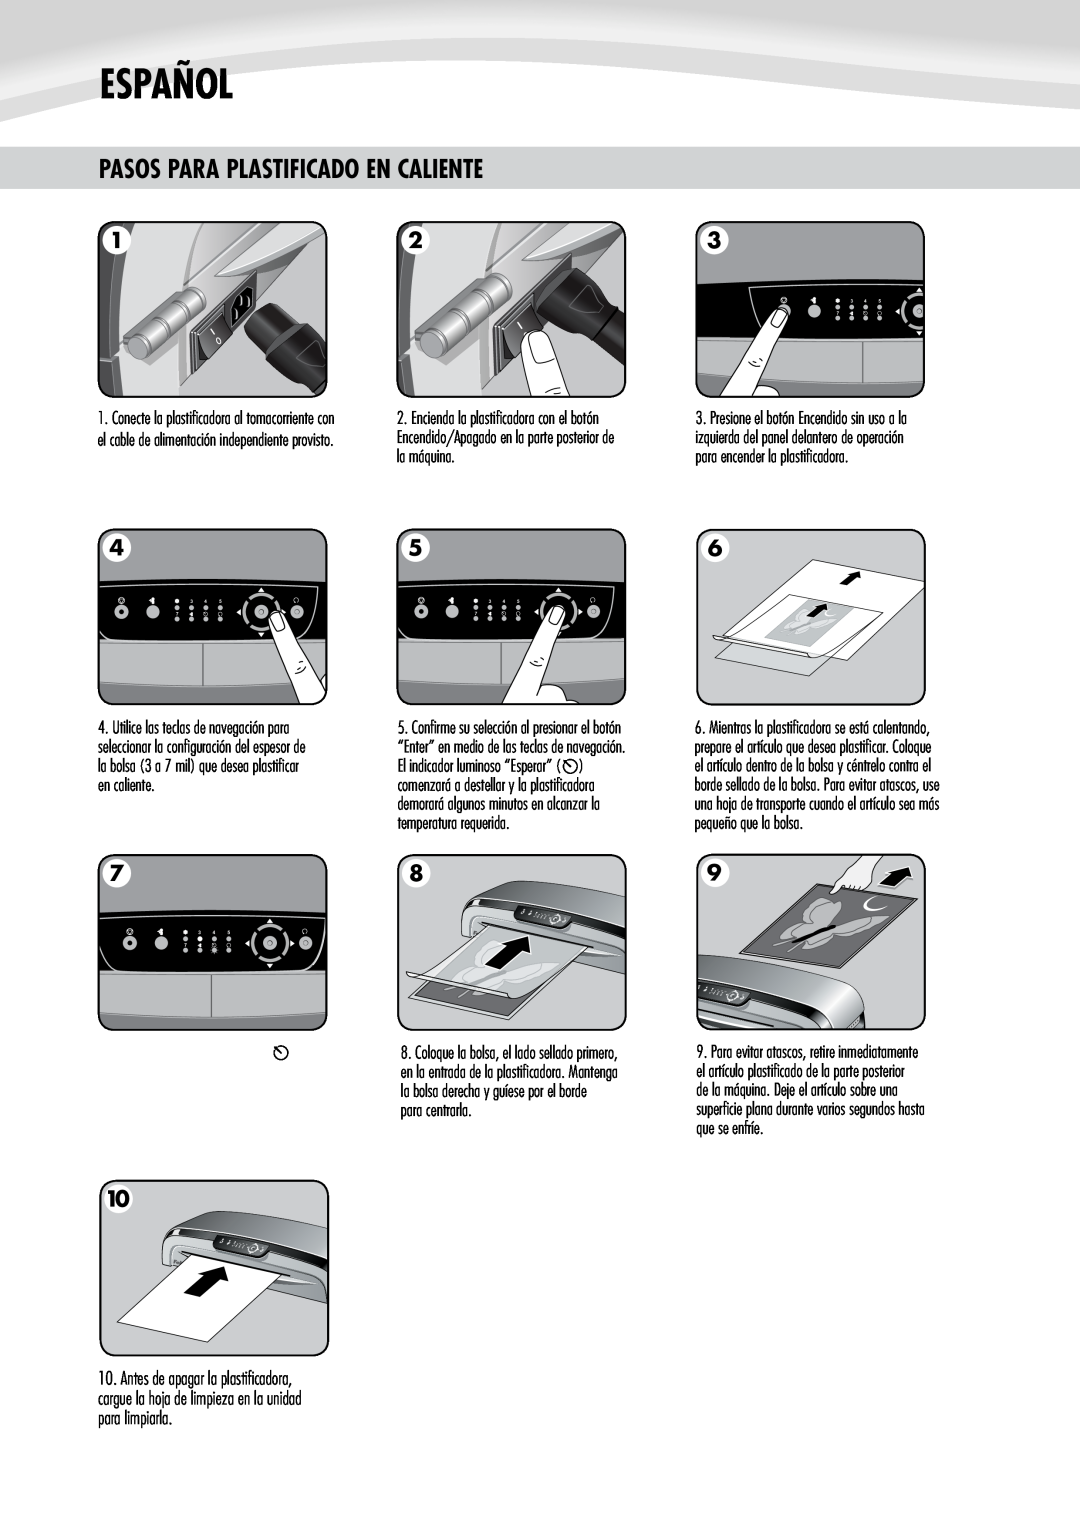 Fellowes 125 manual Pasos Para Plastificado En Caliente, Español, la máquina 